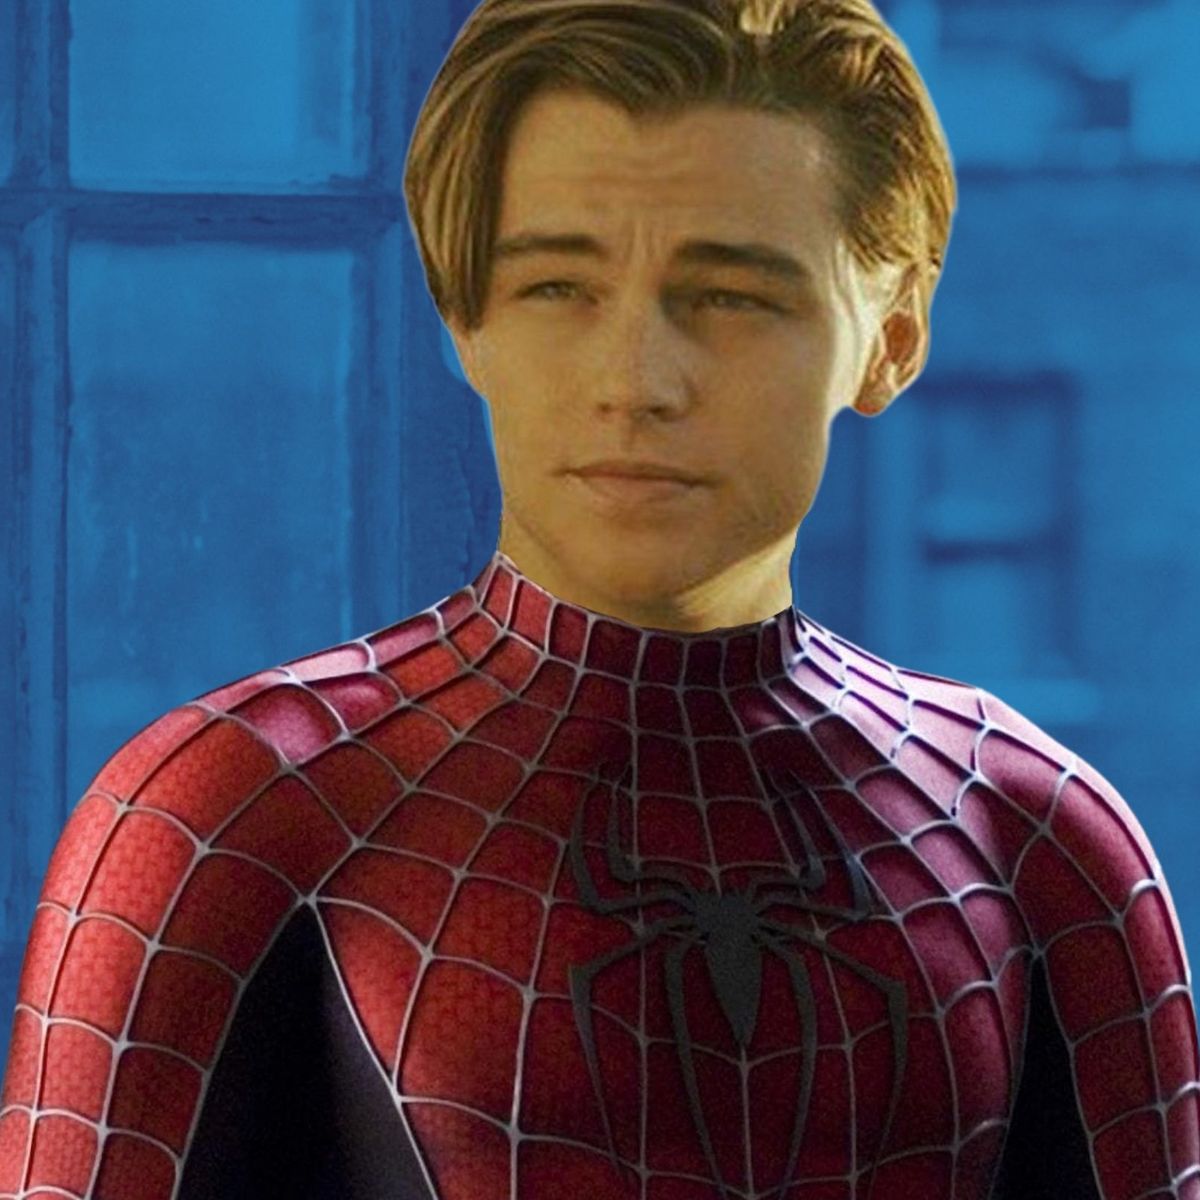 La escena de del Spider-Man de DiCaprio impensable en el MCU